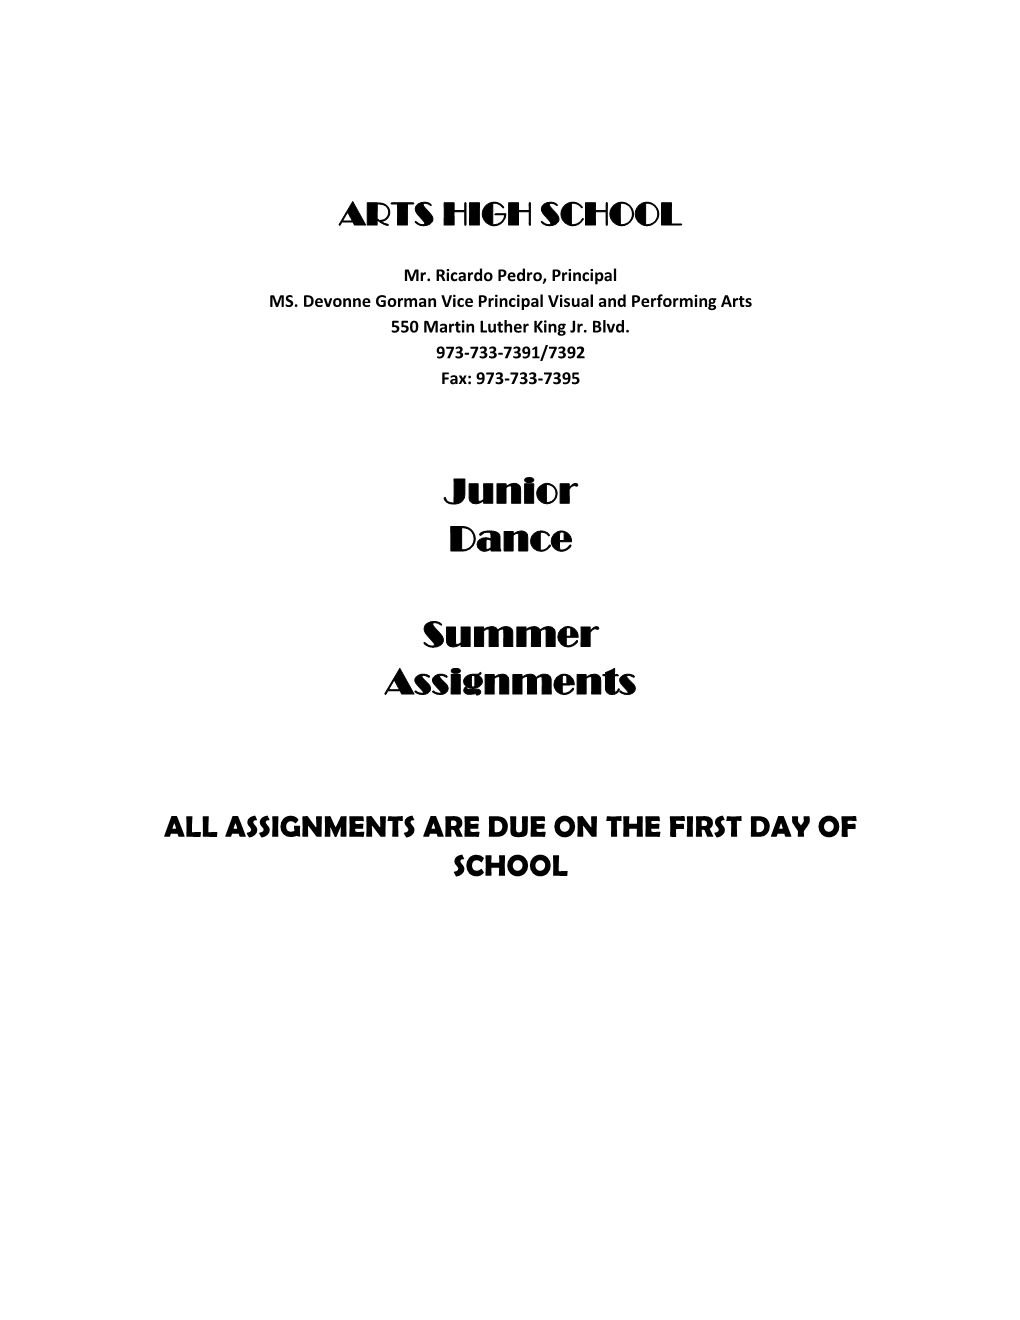 Junior Dance Summer Assignments